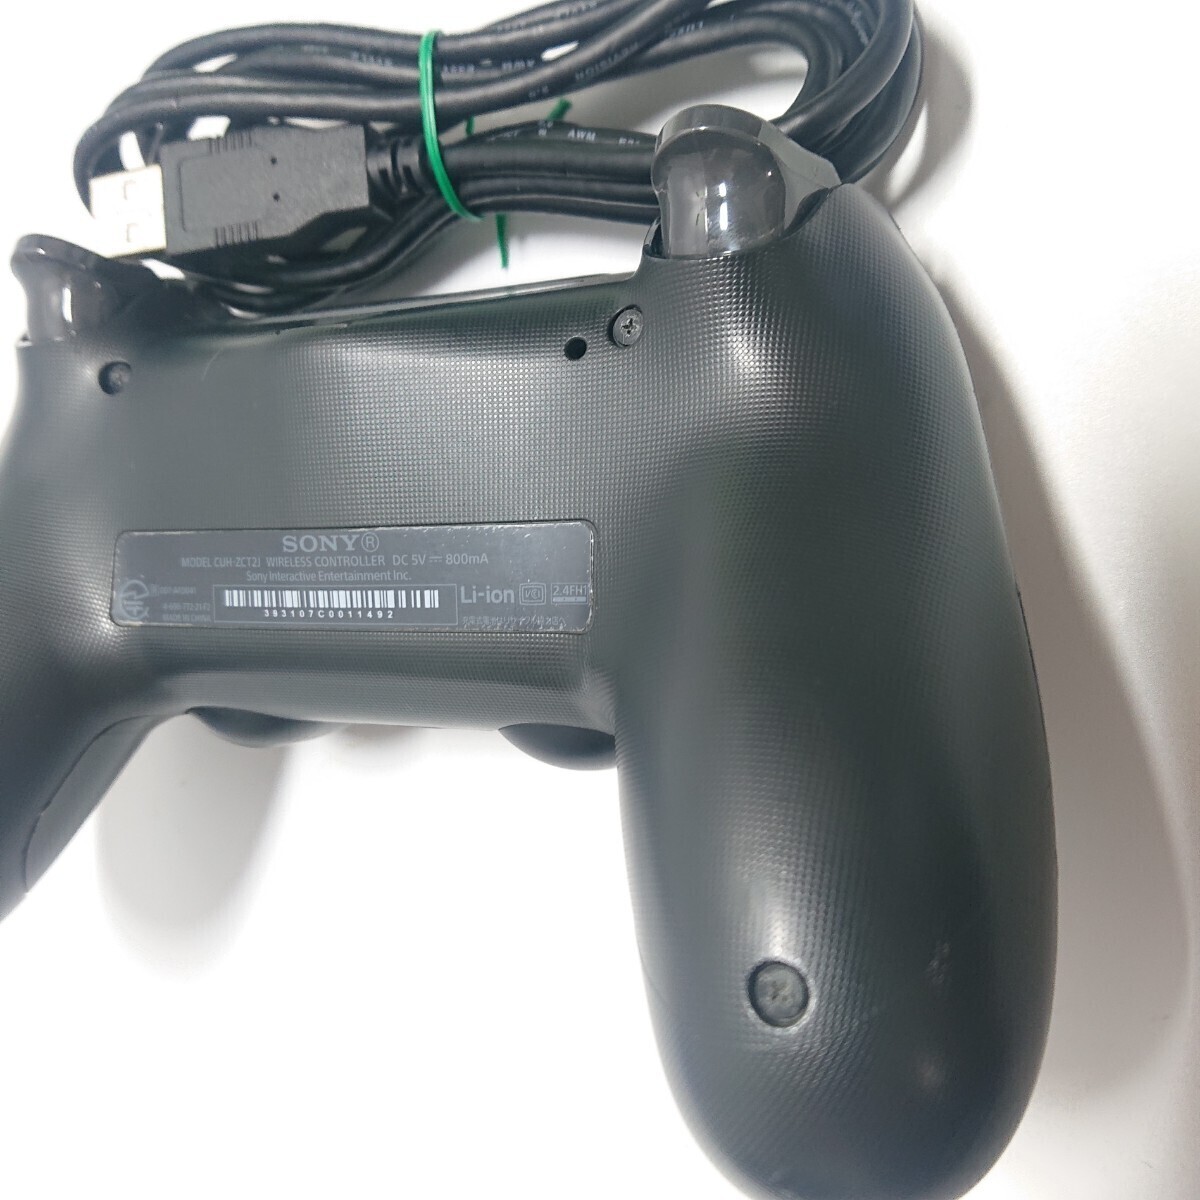 【清掃済み】PS4 純正 コントローラー 後期型 DUALSHOCK4 SONY デュアルショック4 USBケーブル 